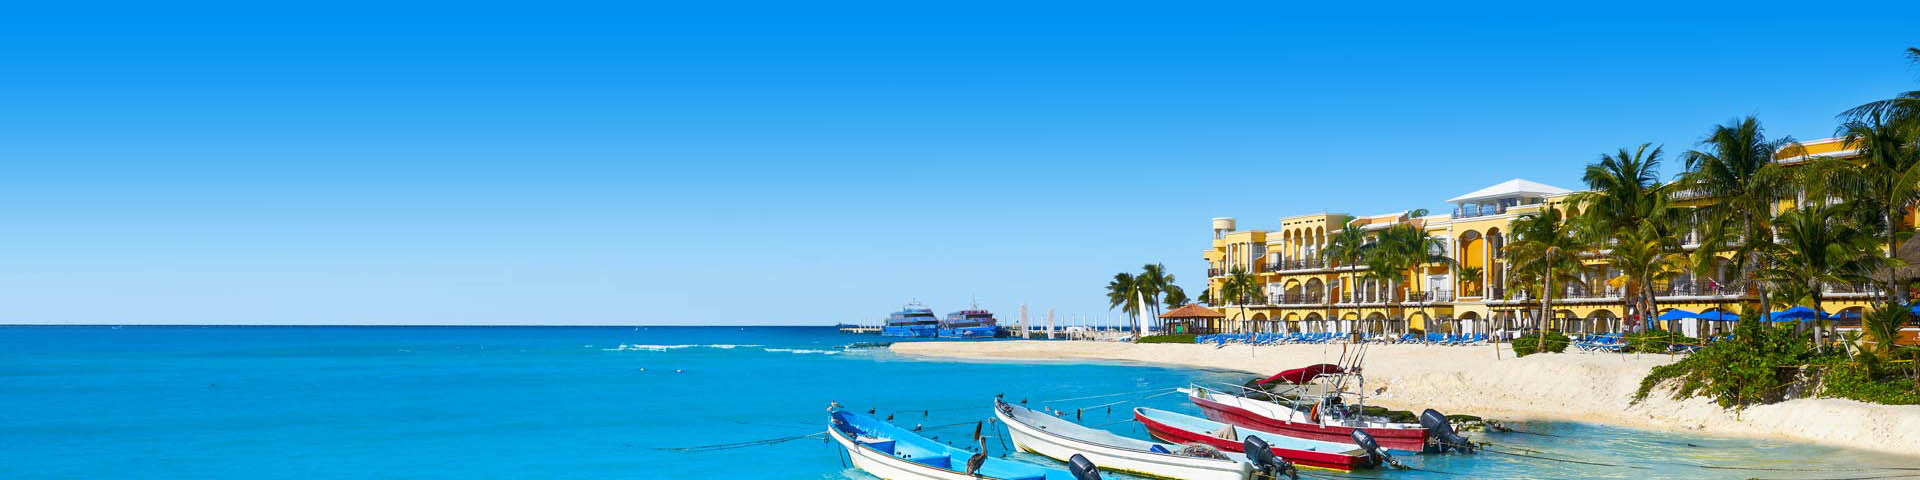 Bootjes in blauwe zee, met uitzicht op een wit strand 